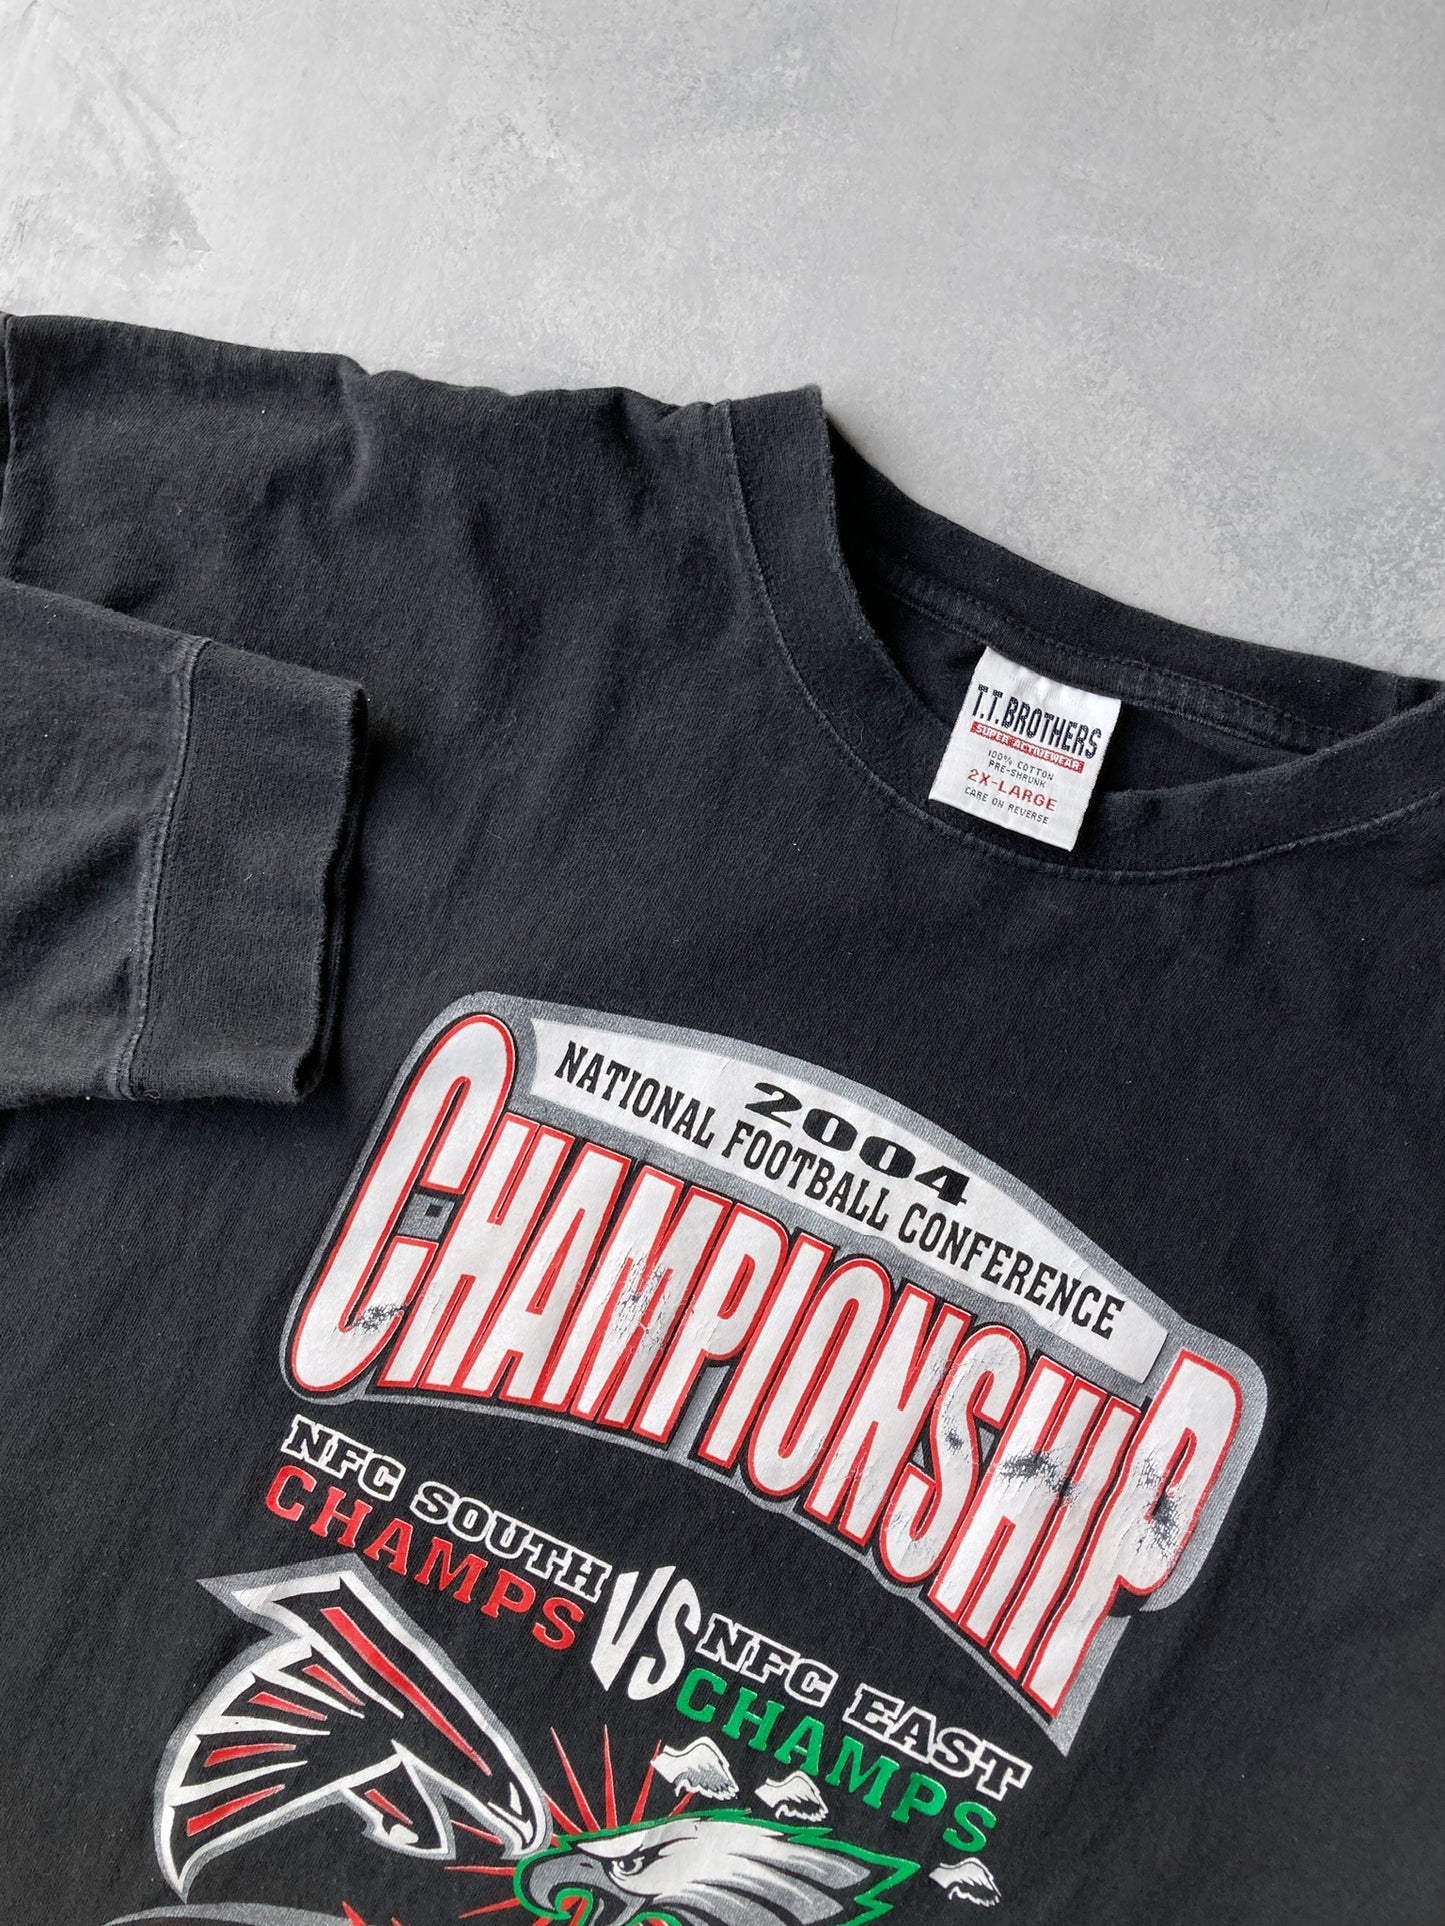 NFC Championship T-Shirt '04 - XXL